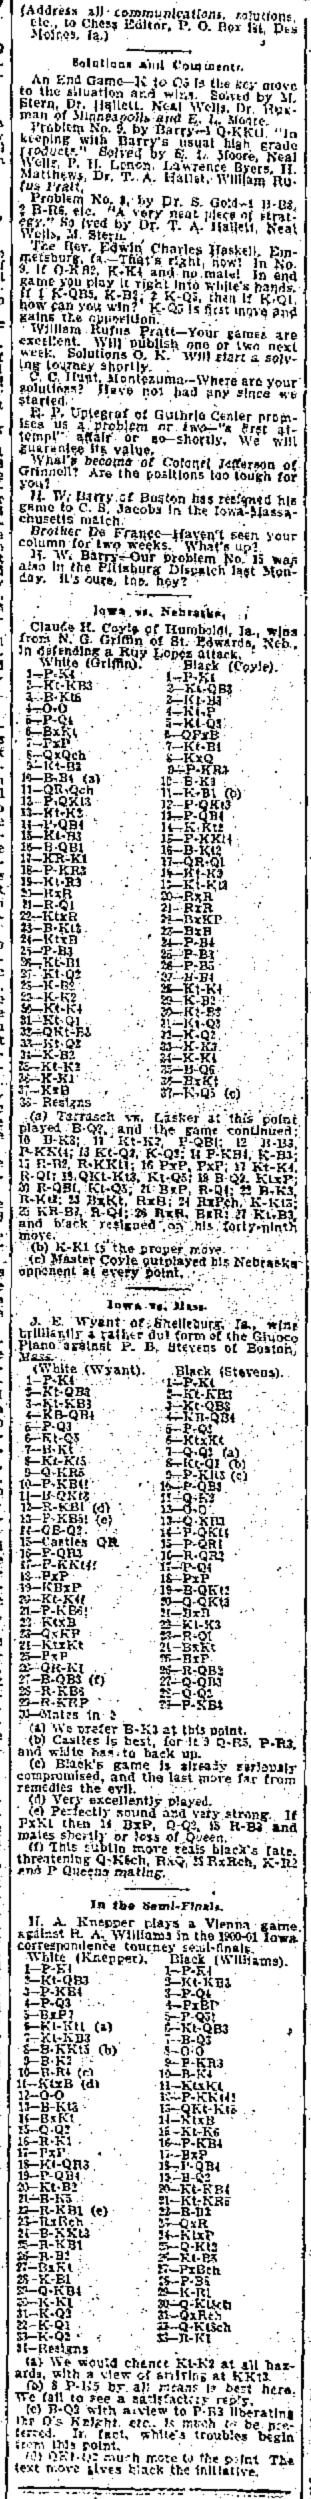 1901.09.12-02 Des Moines Weekly Leader.jpg